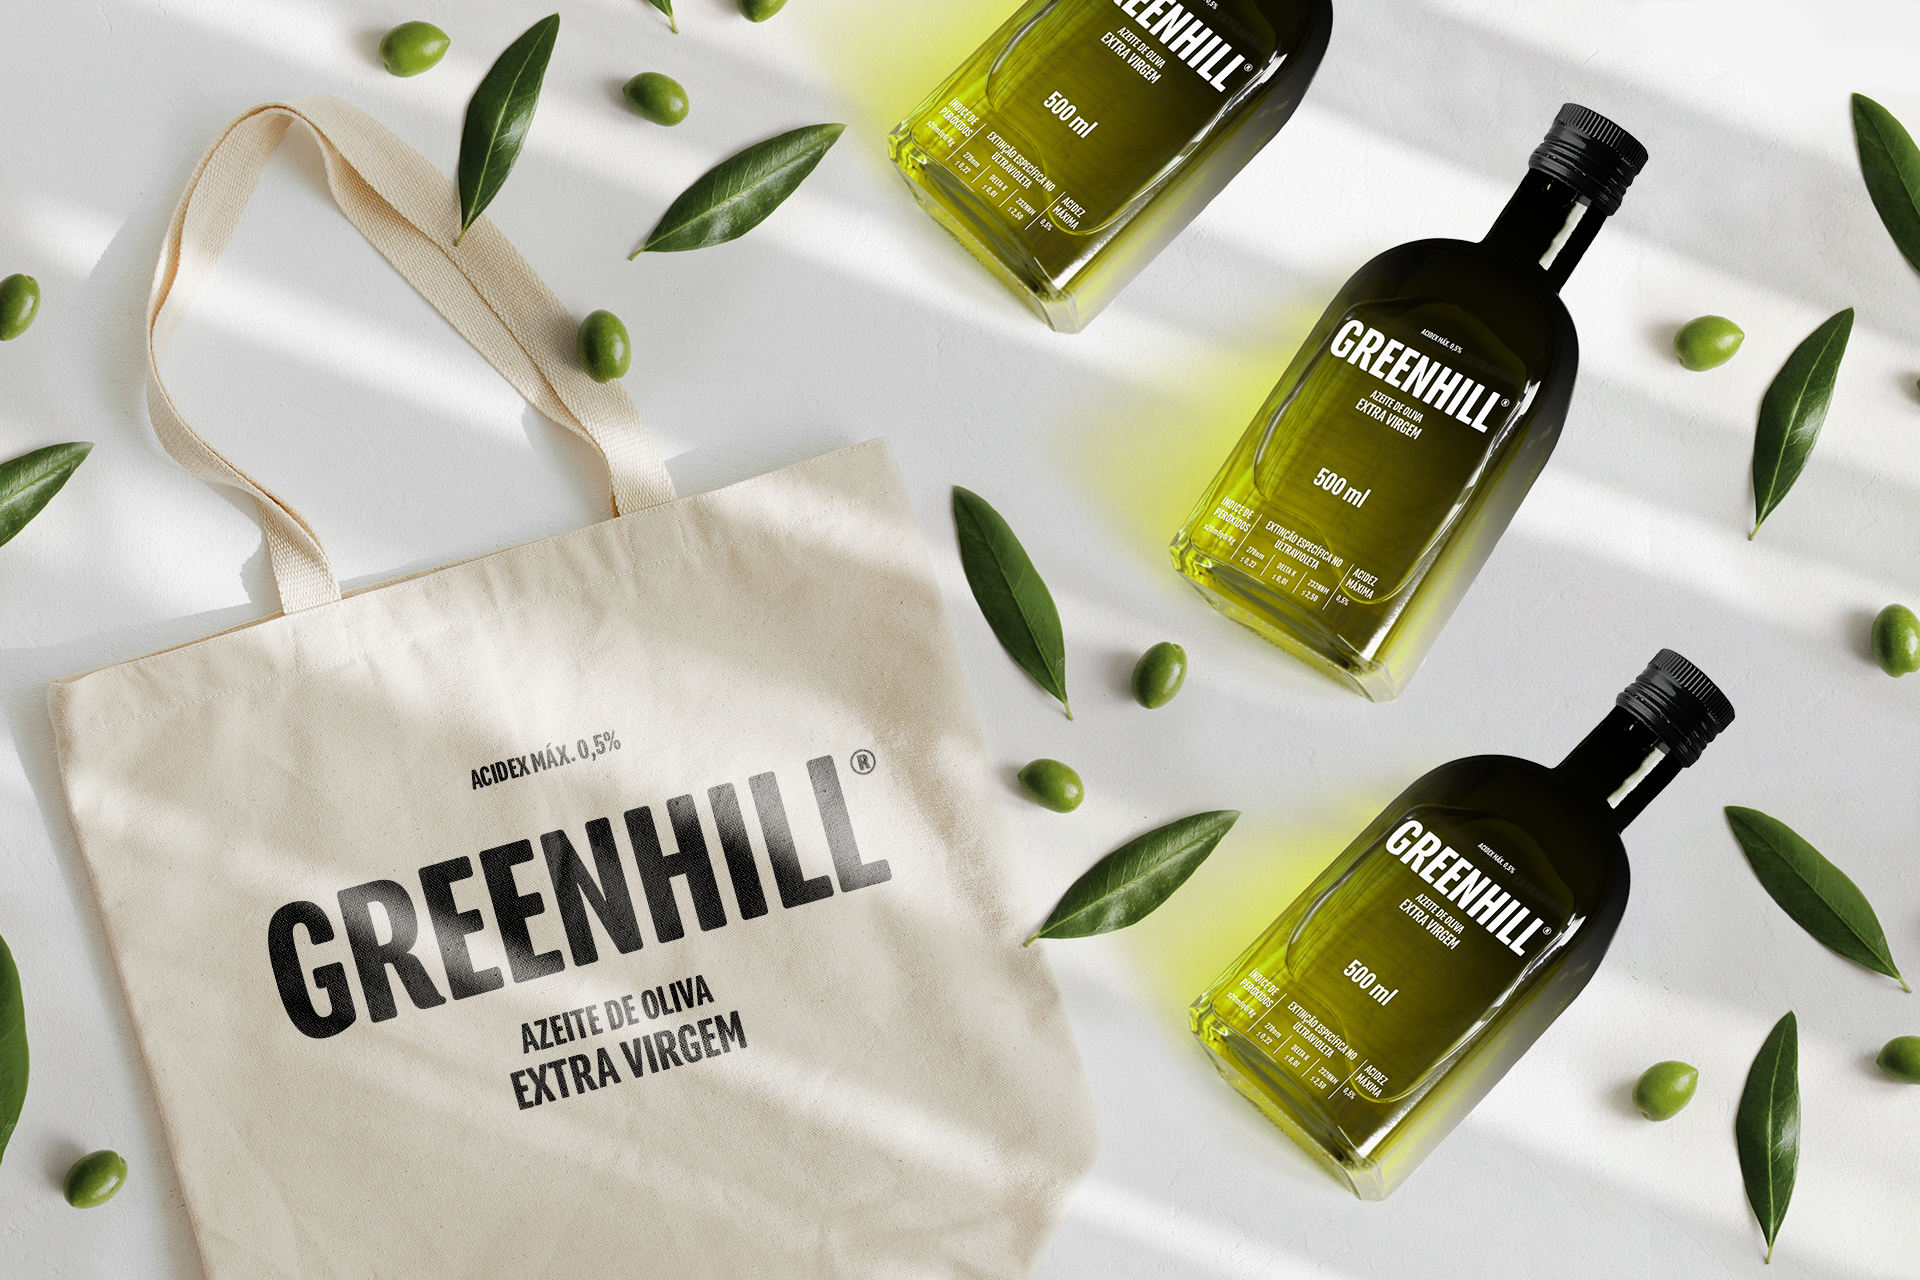 Sacola e garrafas – Design de embalagem Greenhill Azeite de Oliva – Léo Tavares Designer